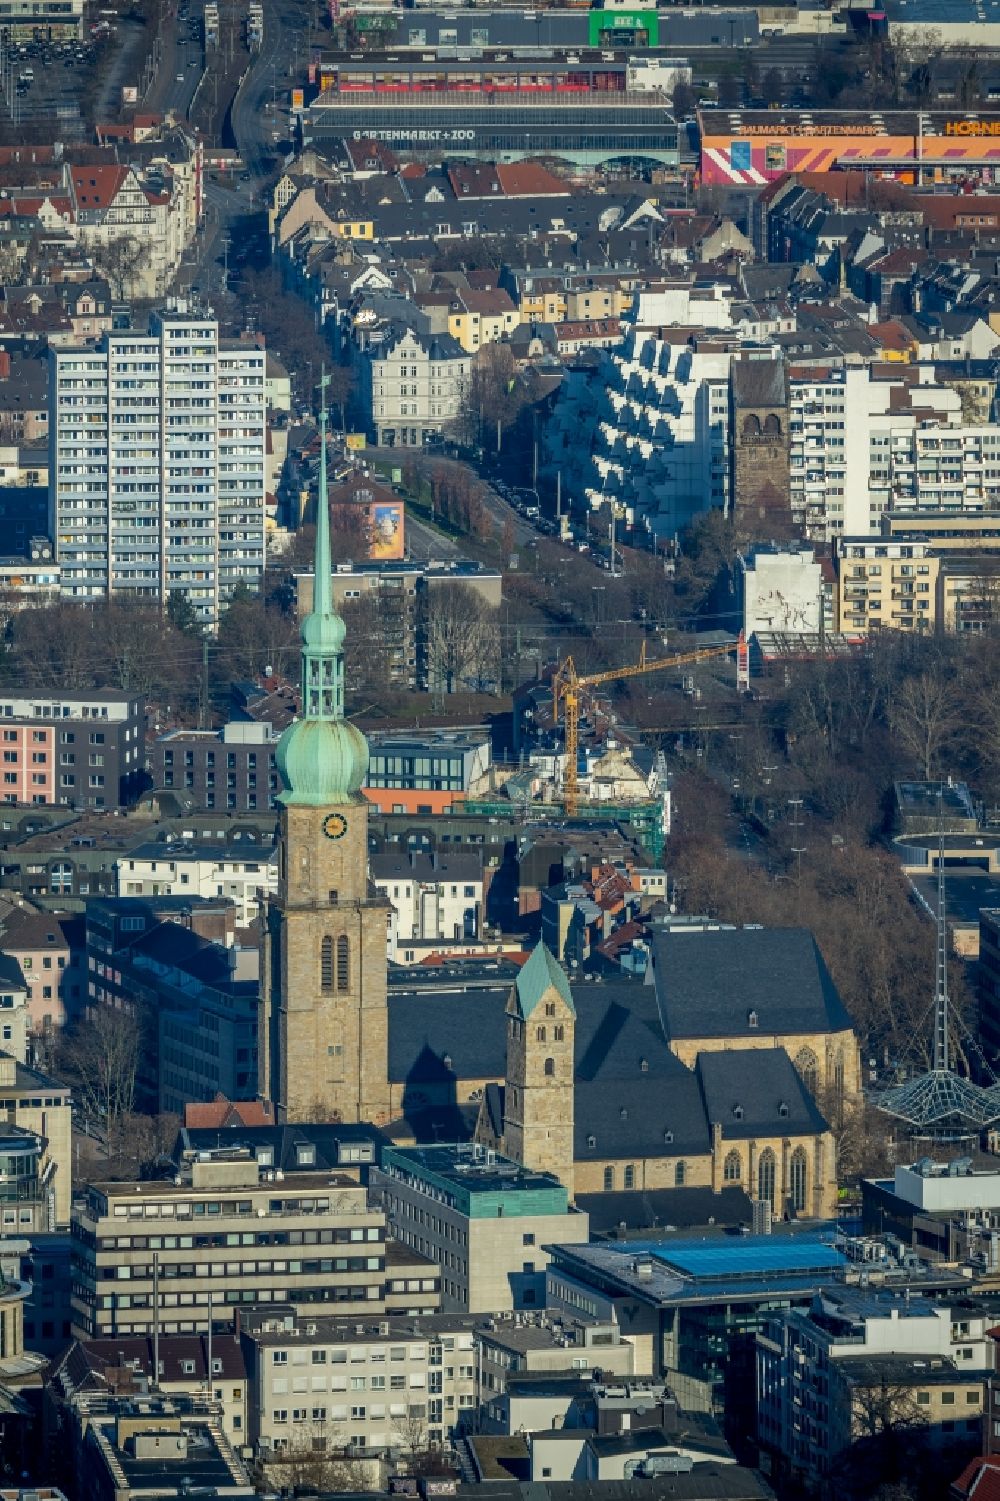 Dortmund aus der Vogelperspektive: Kirchengebäude der St. Reinoldi in Dortmund im Bundesland Nordrhein-Westfalen, Deutschland